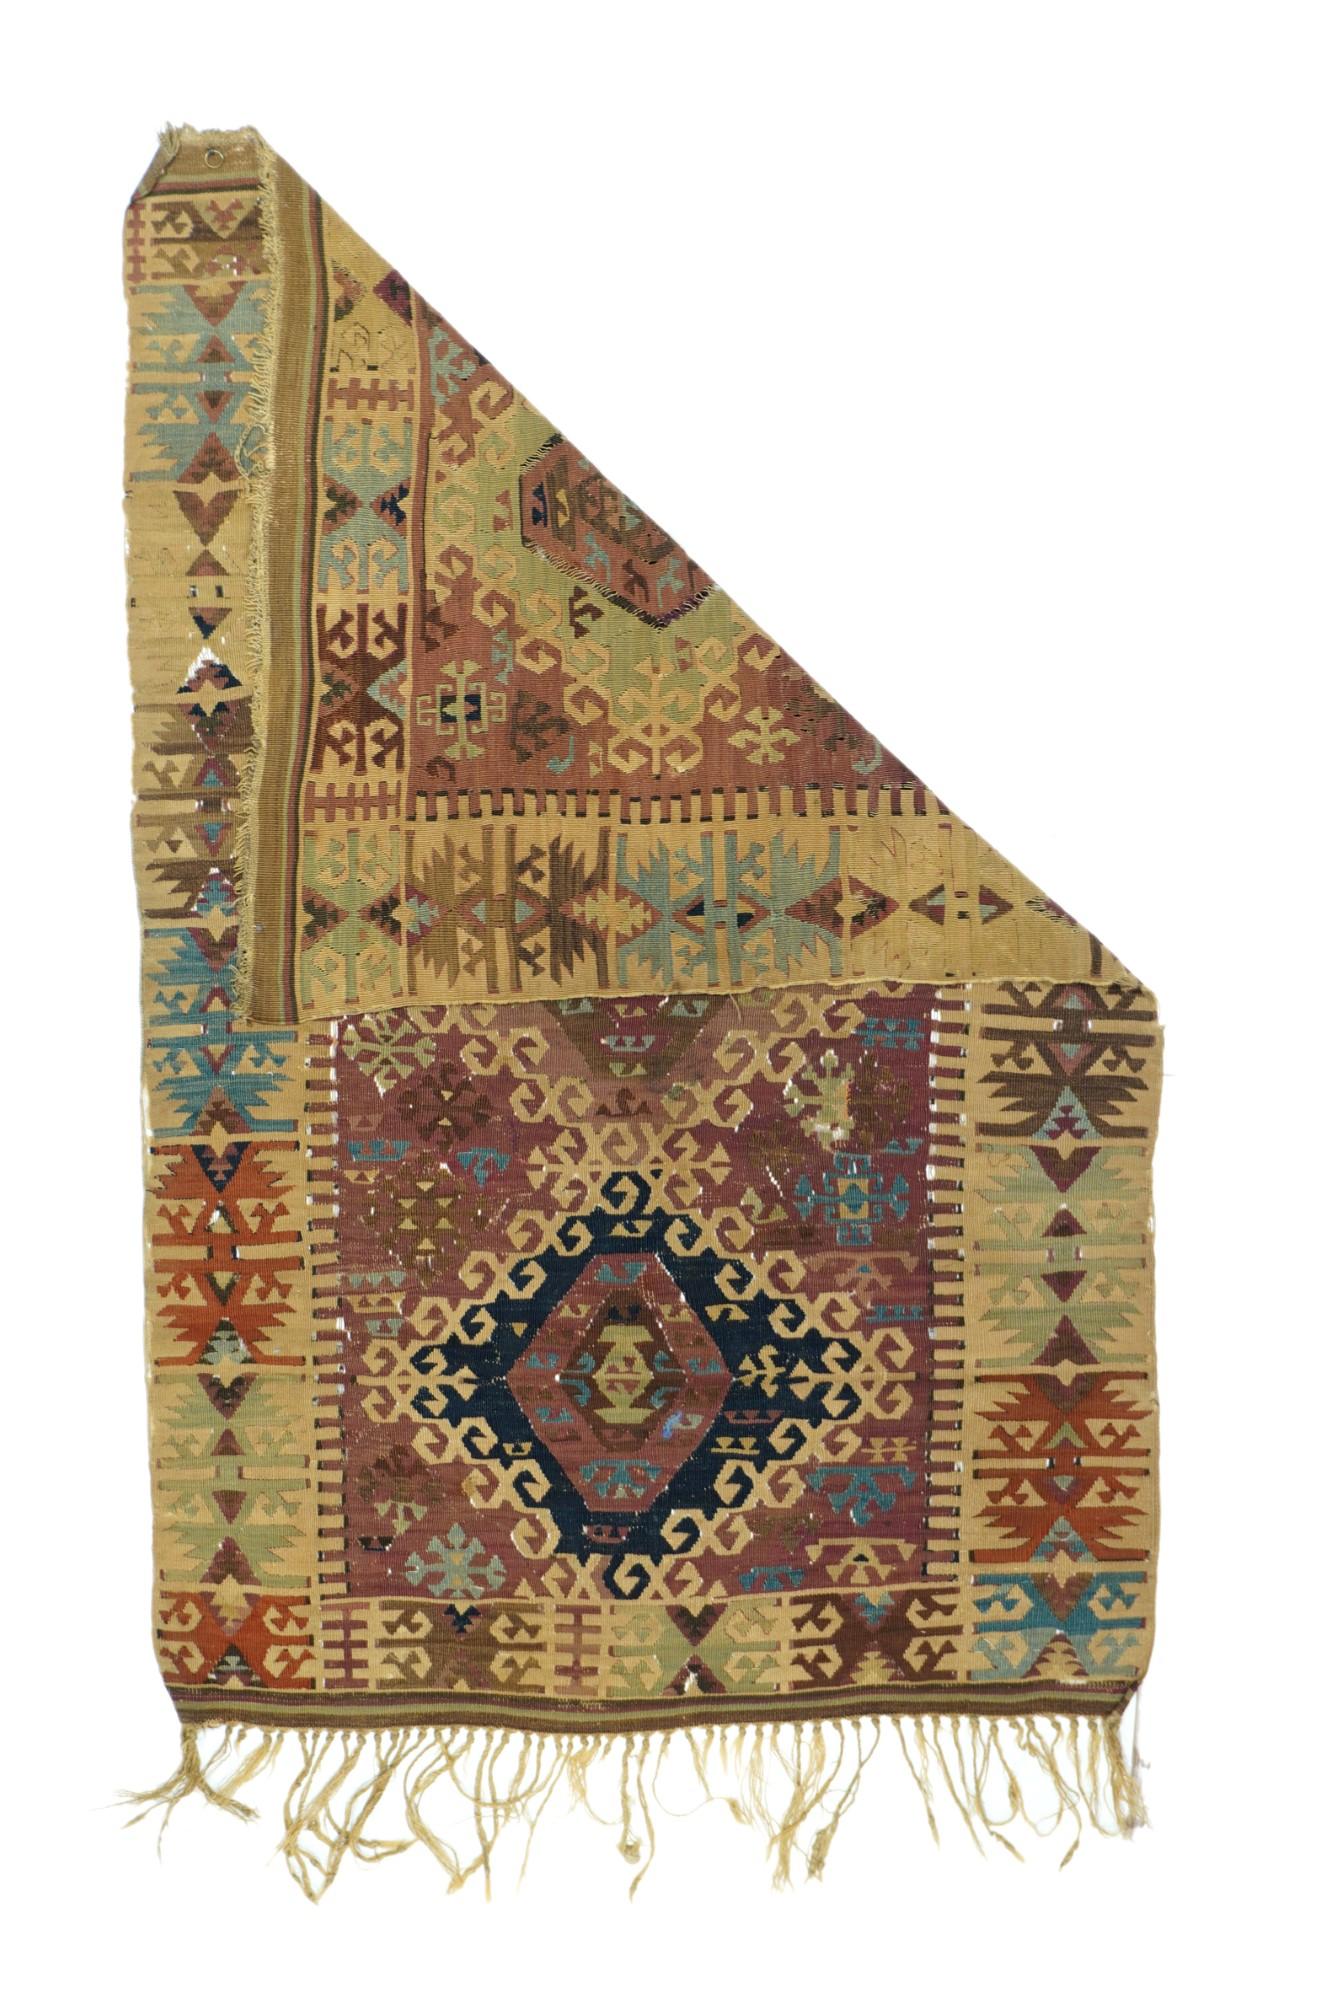 Vintage Kilim rug¬†3' x 4'11''.